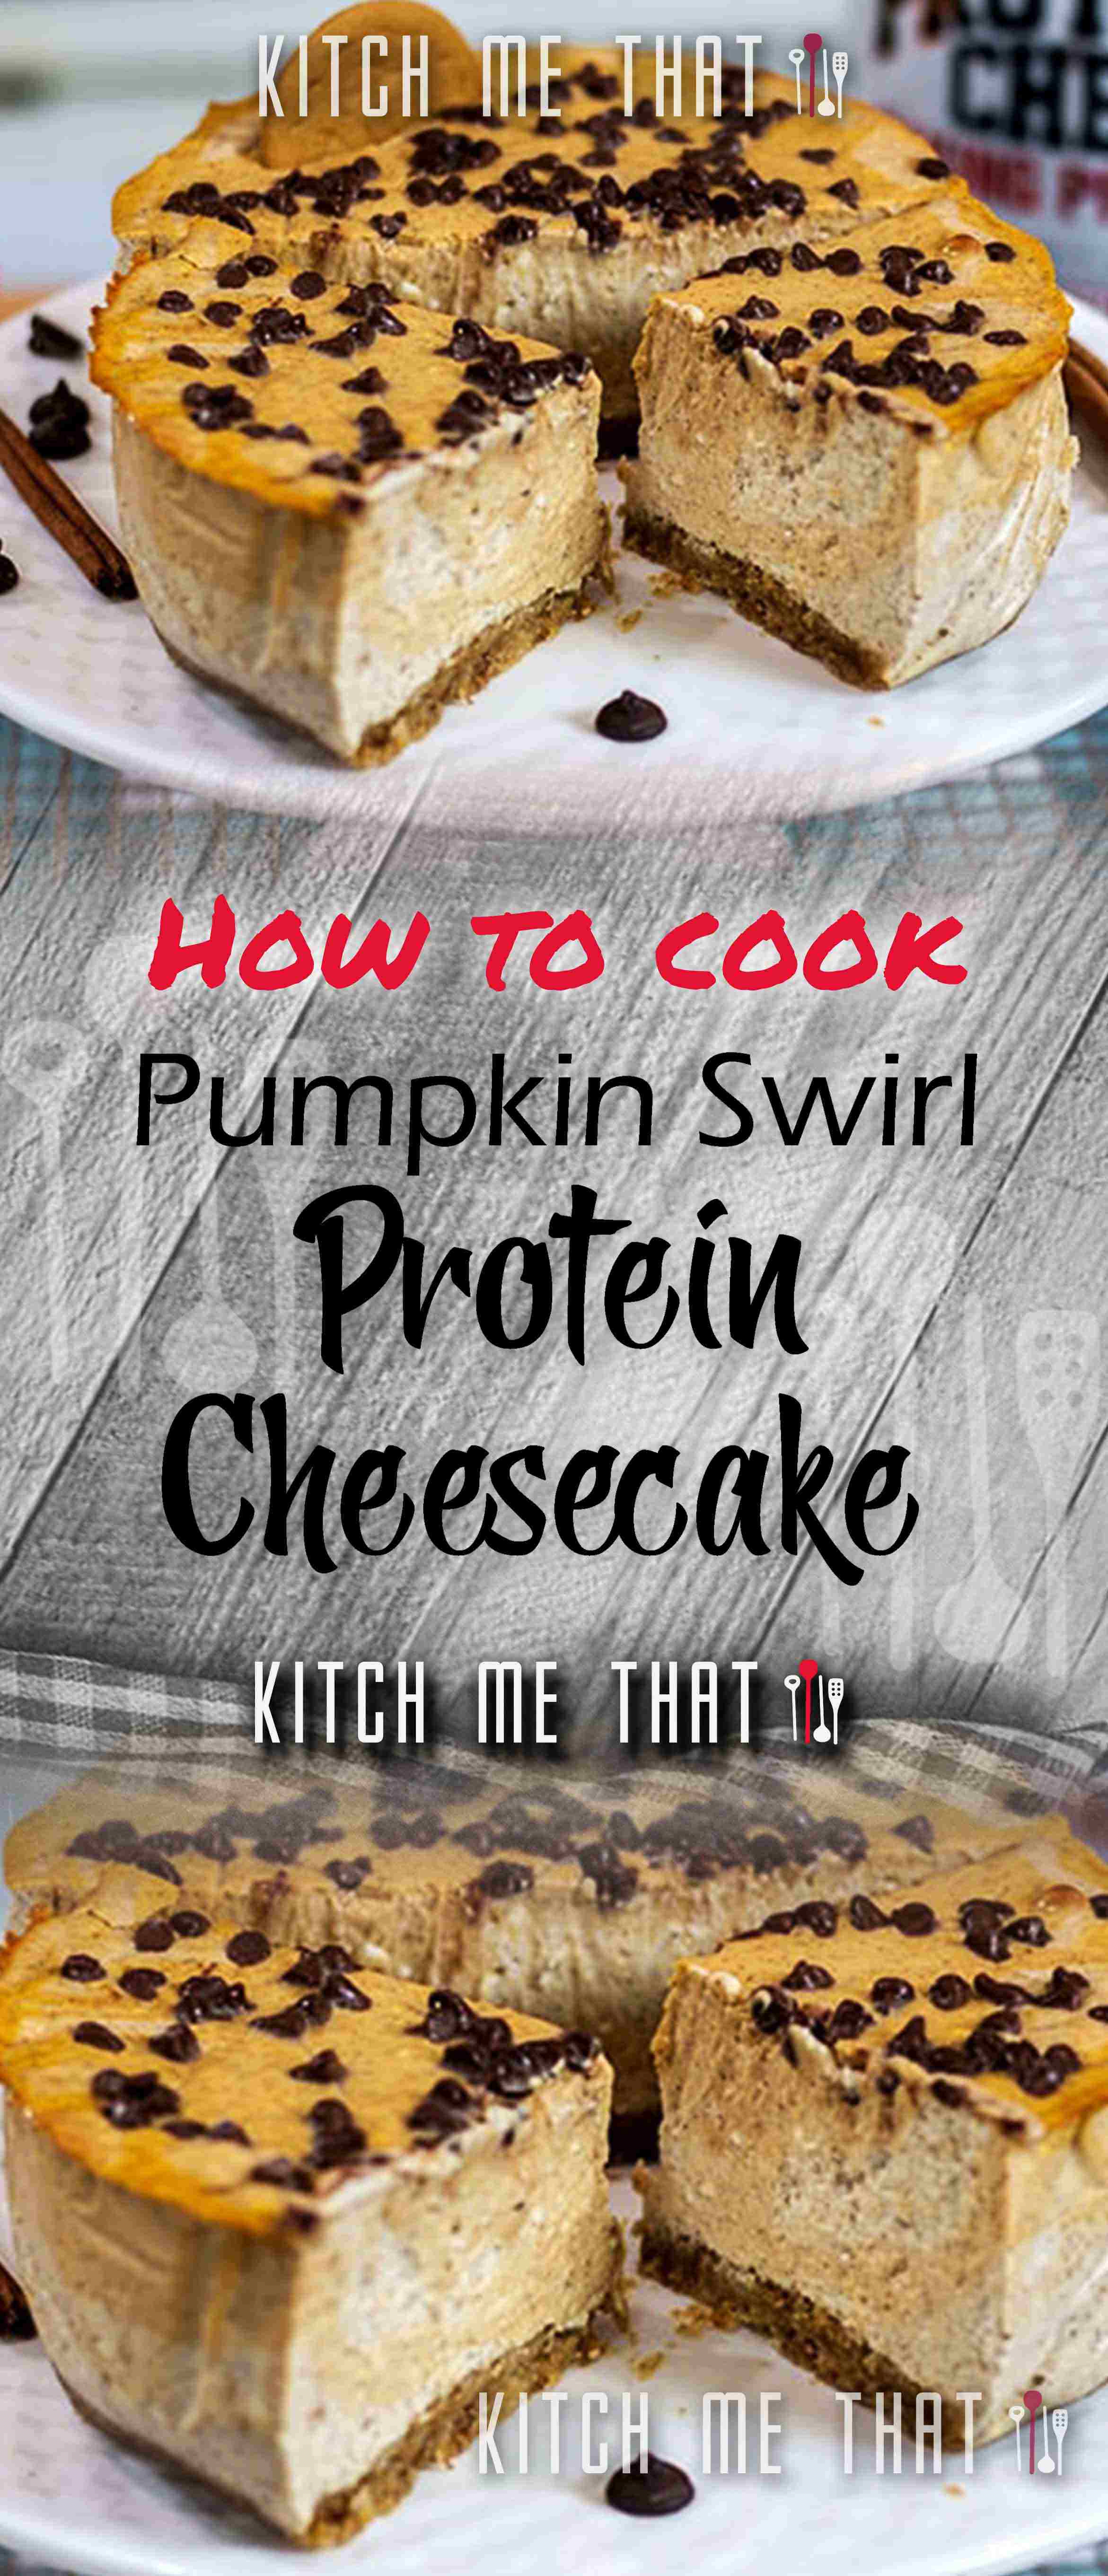 Pumpkin Swirl Protein Cheesecake